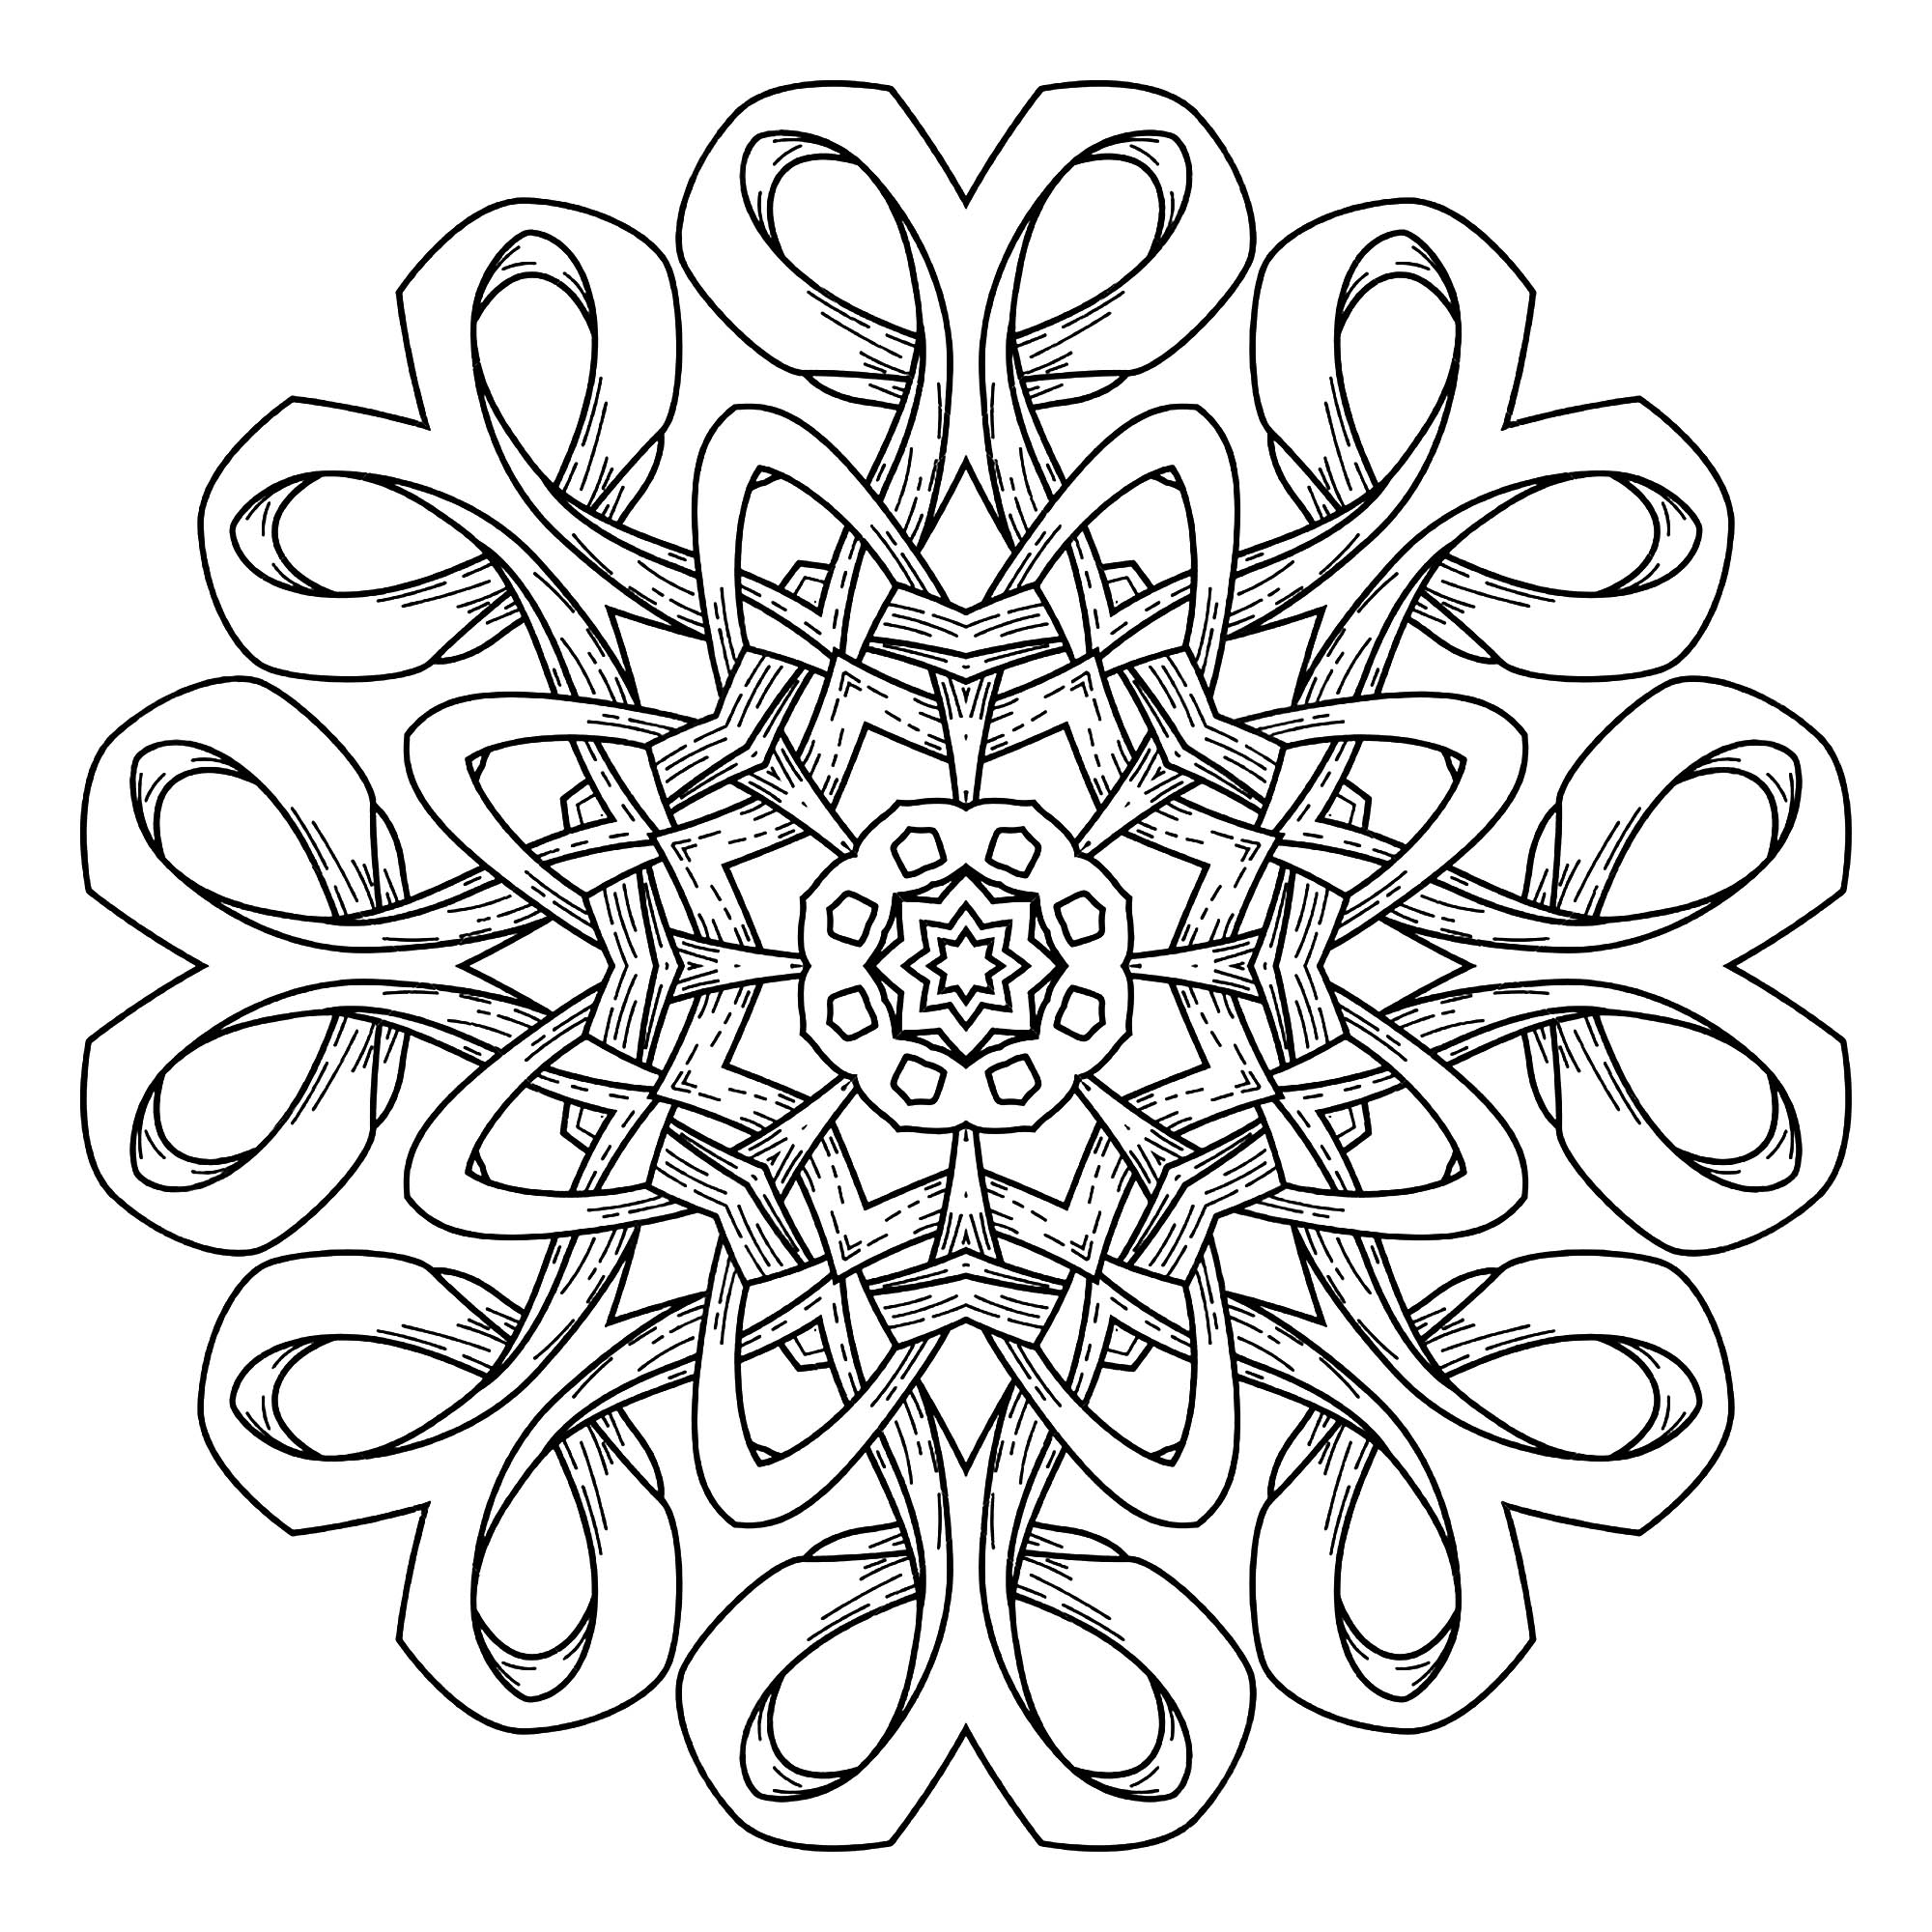 Abstract decorative Mandala - Mandalas Adult Coloring Pages